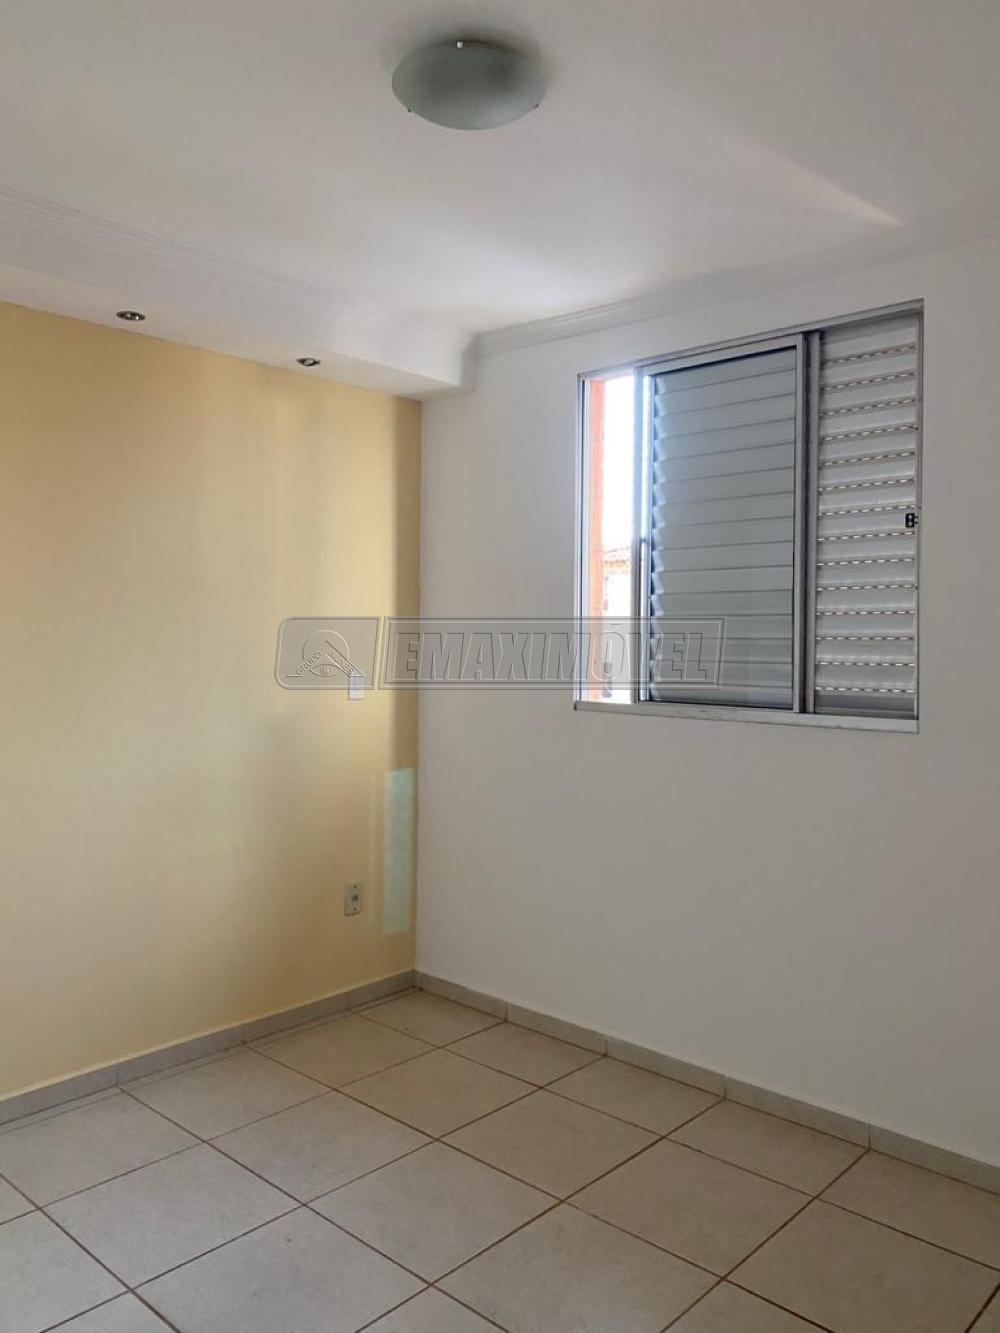 Alugar Apartamento / Padrão em Sorocaba R$ 900,00 - Foto 13